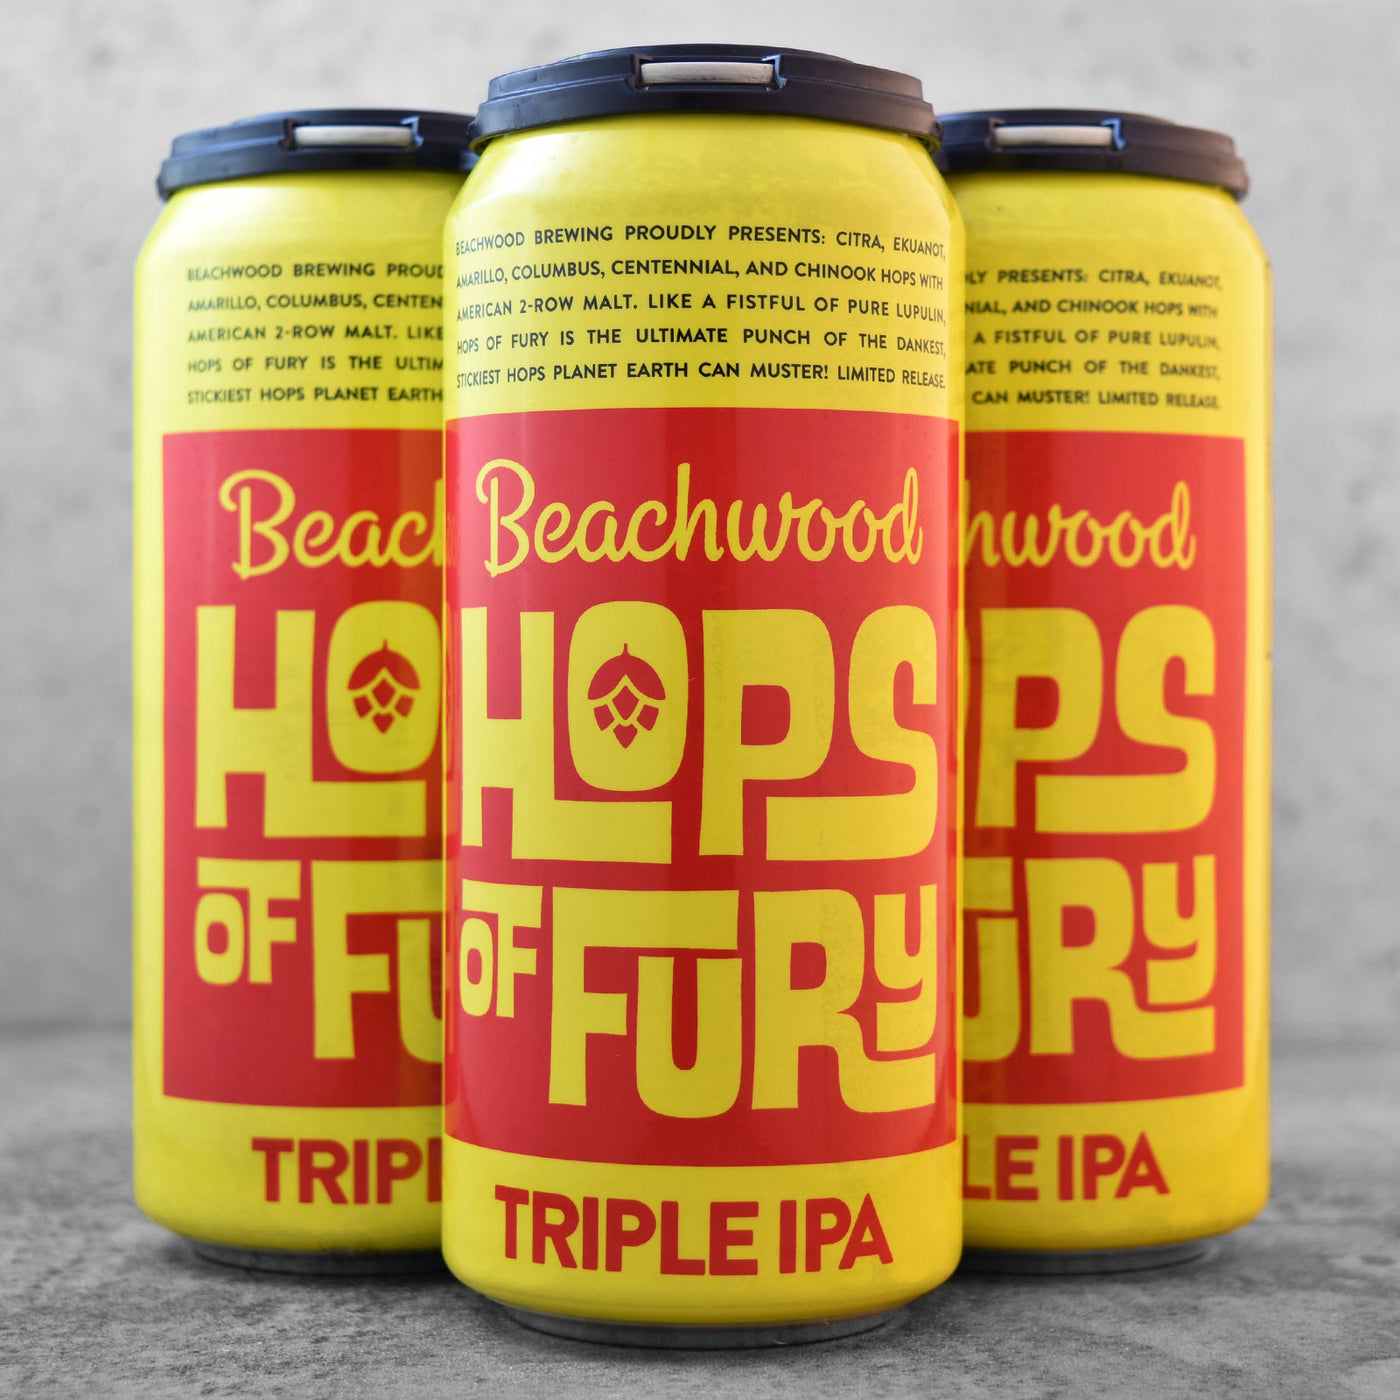 Beachwood Hops Of Fury